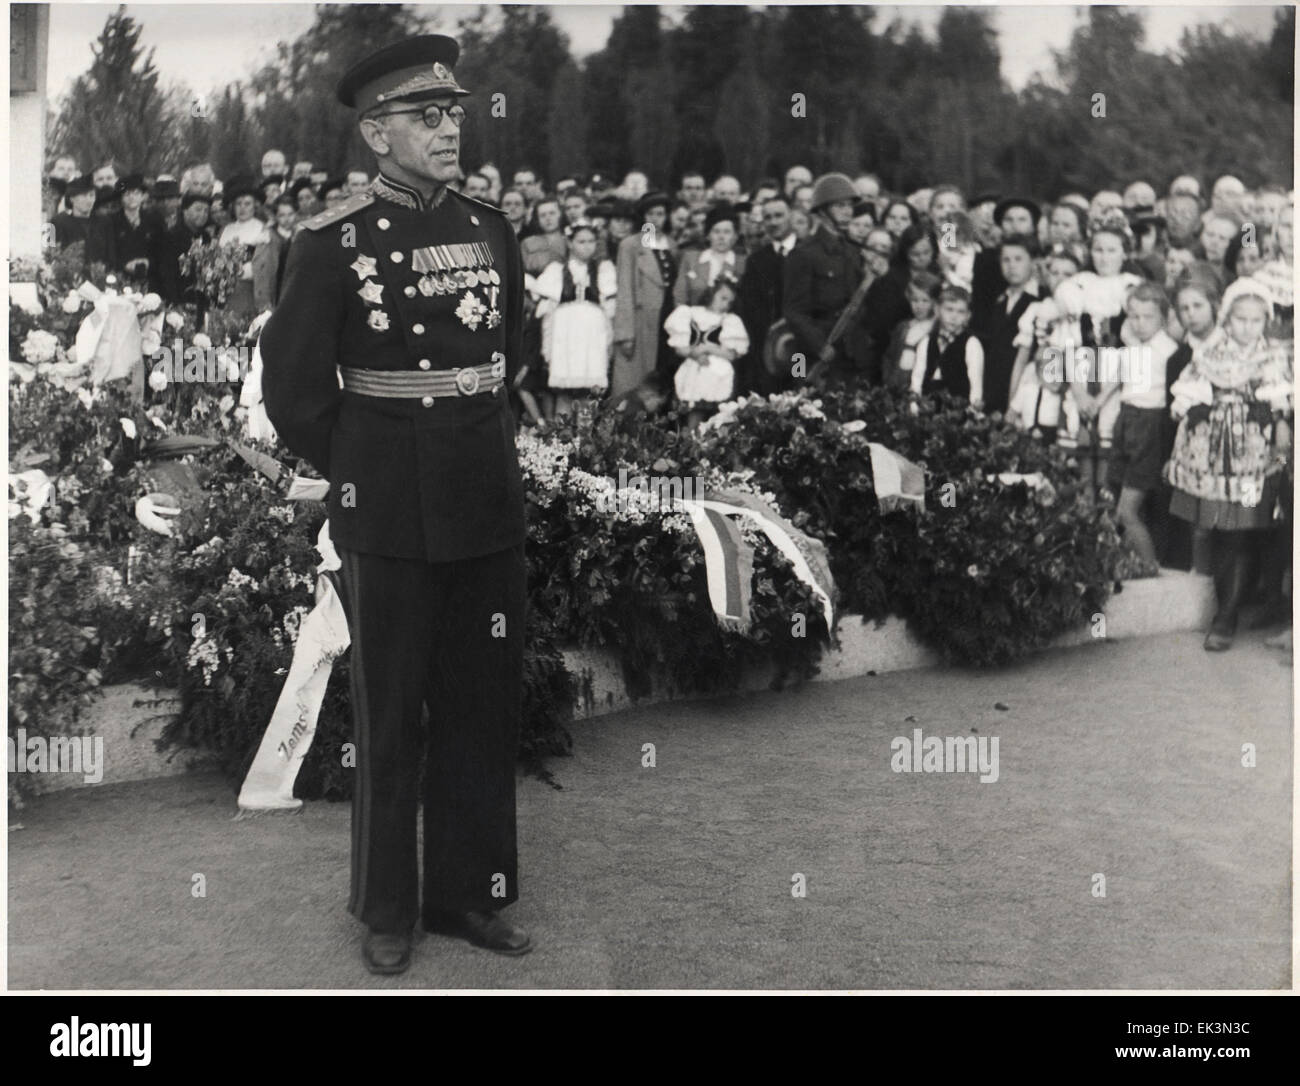 Sowjetischen Generaloberst in der Tschechoslowakei. 14. Juni 1948 Prag? Stockfoto